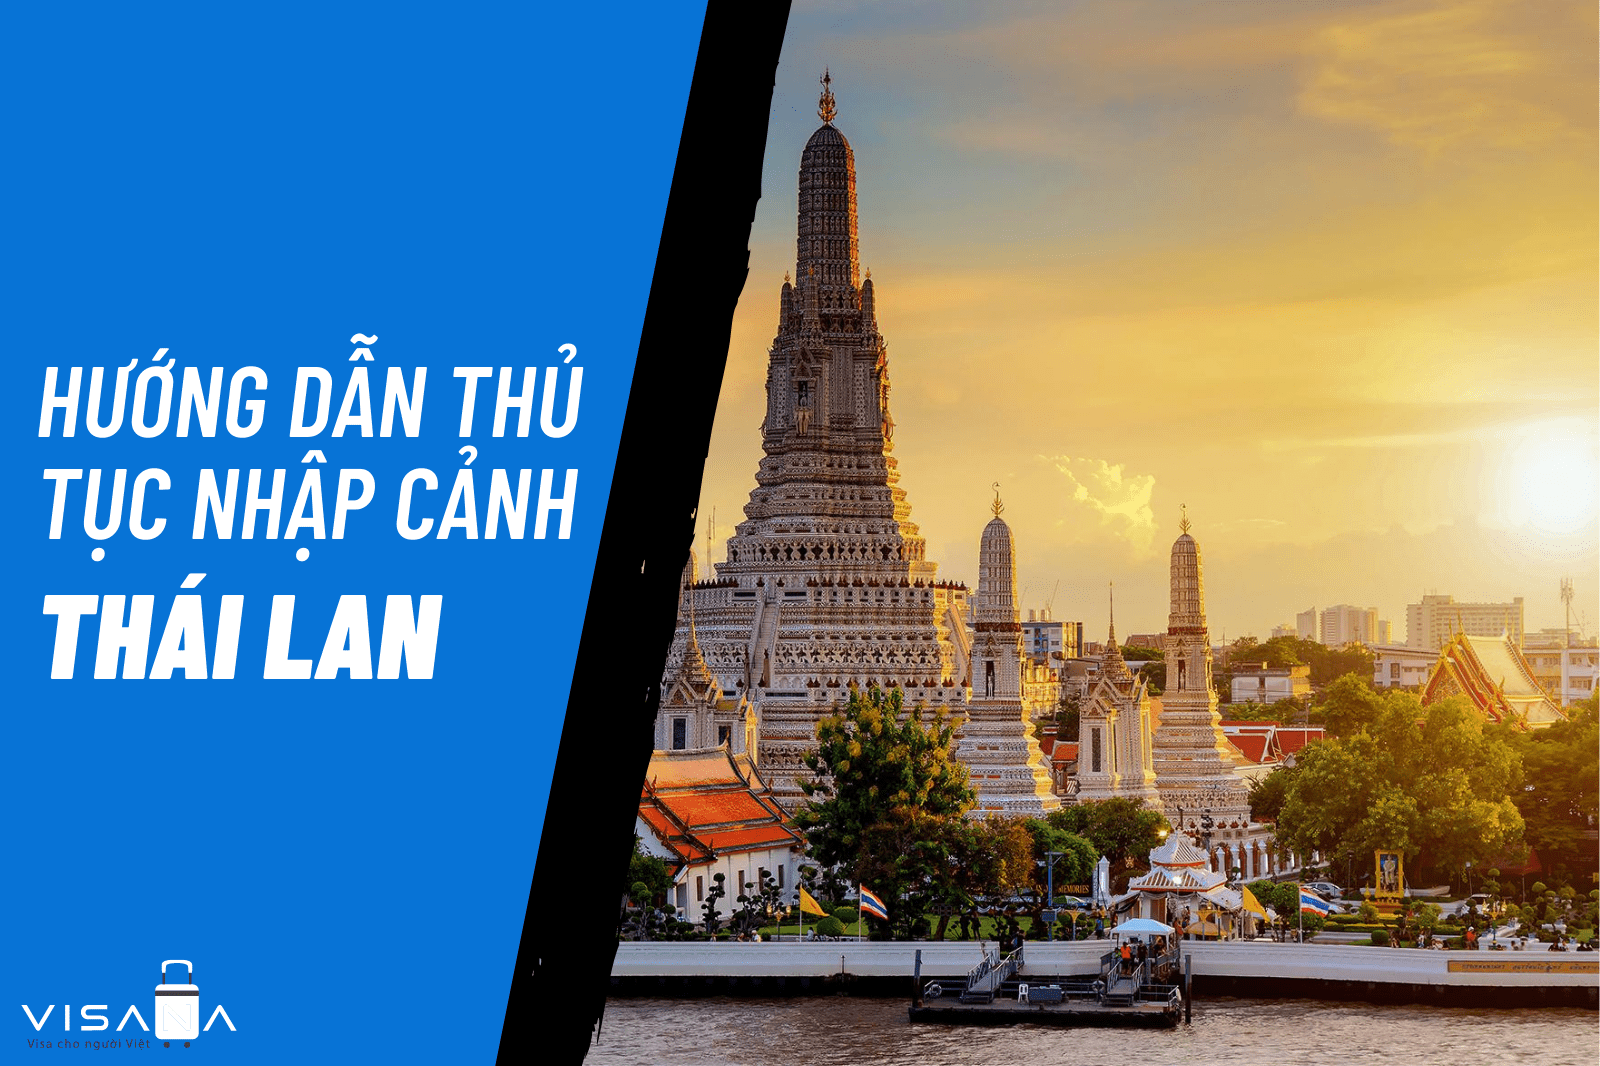 Có những thủ tục gì cần chuẩn bị để làm hộ chiếu đi Thái Lan?
